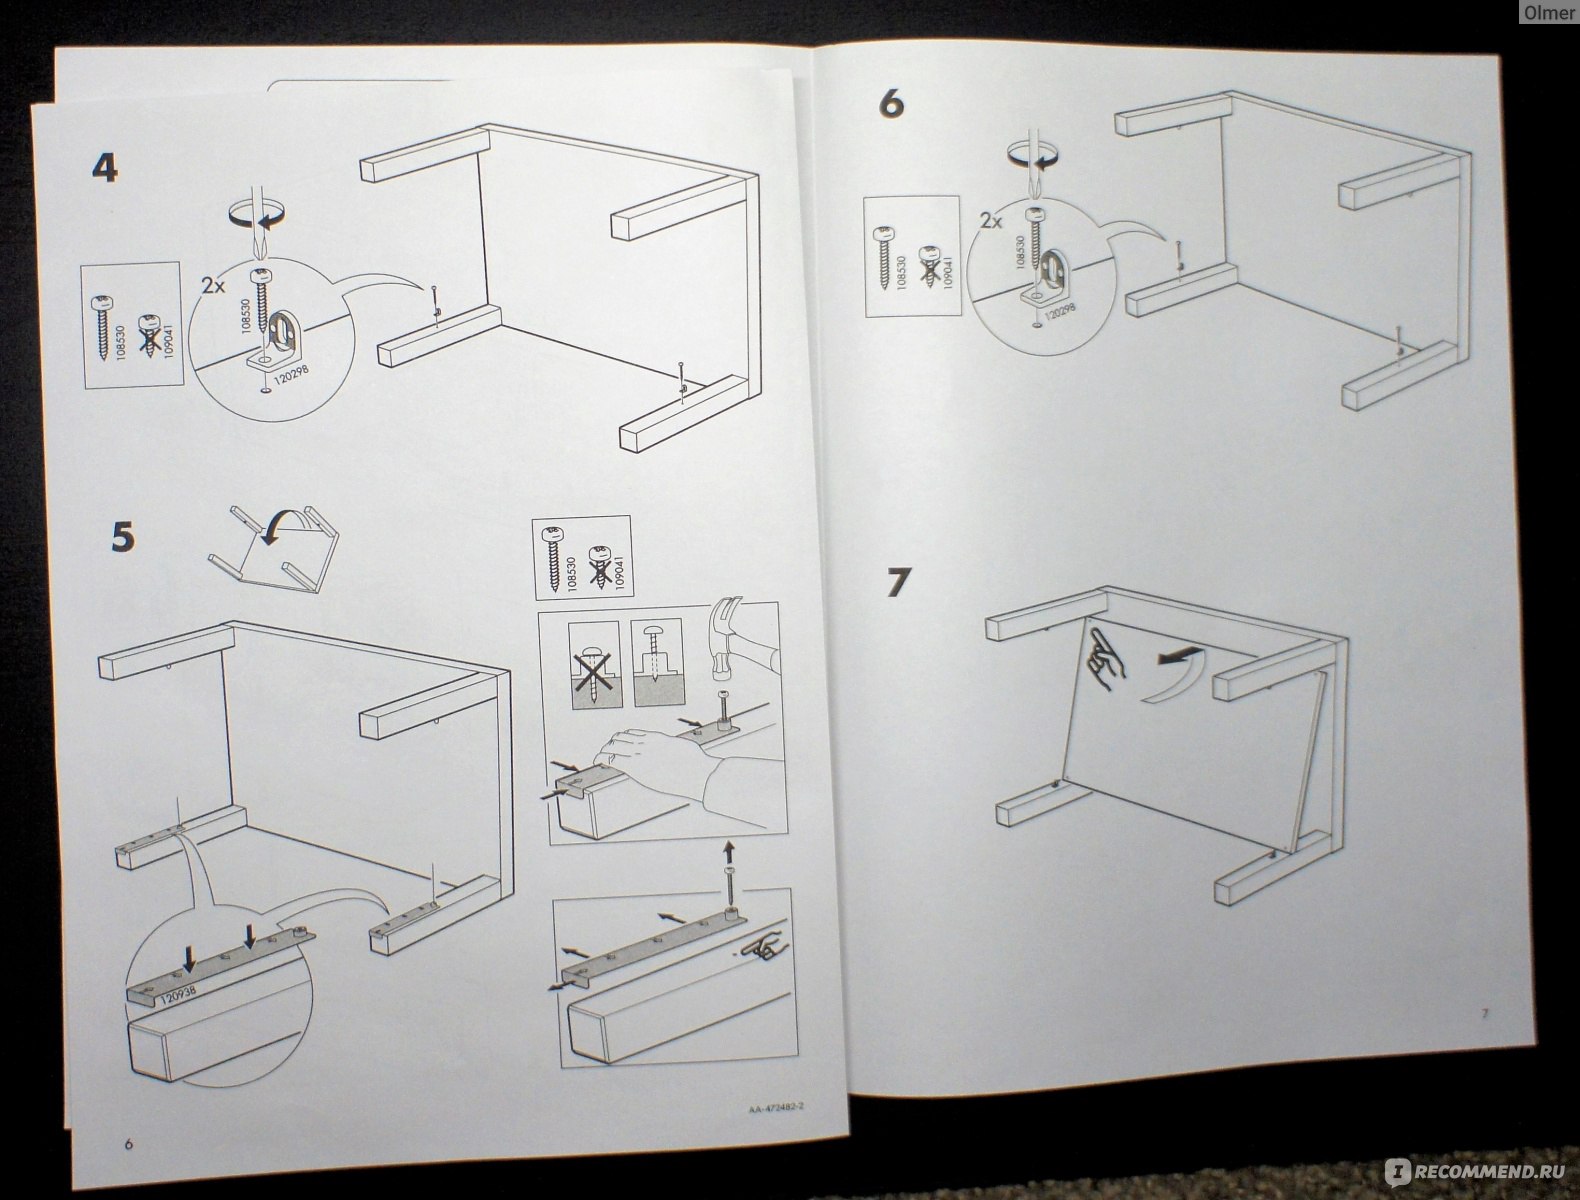 Стол икеа сборка. Lack икеа инструкция стол. Ikea инструкция по сборке стола.